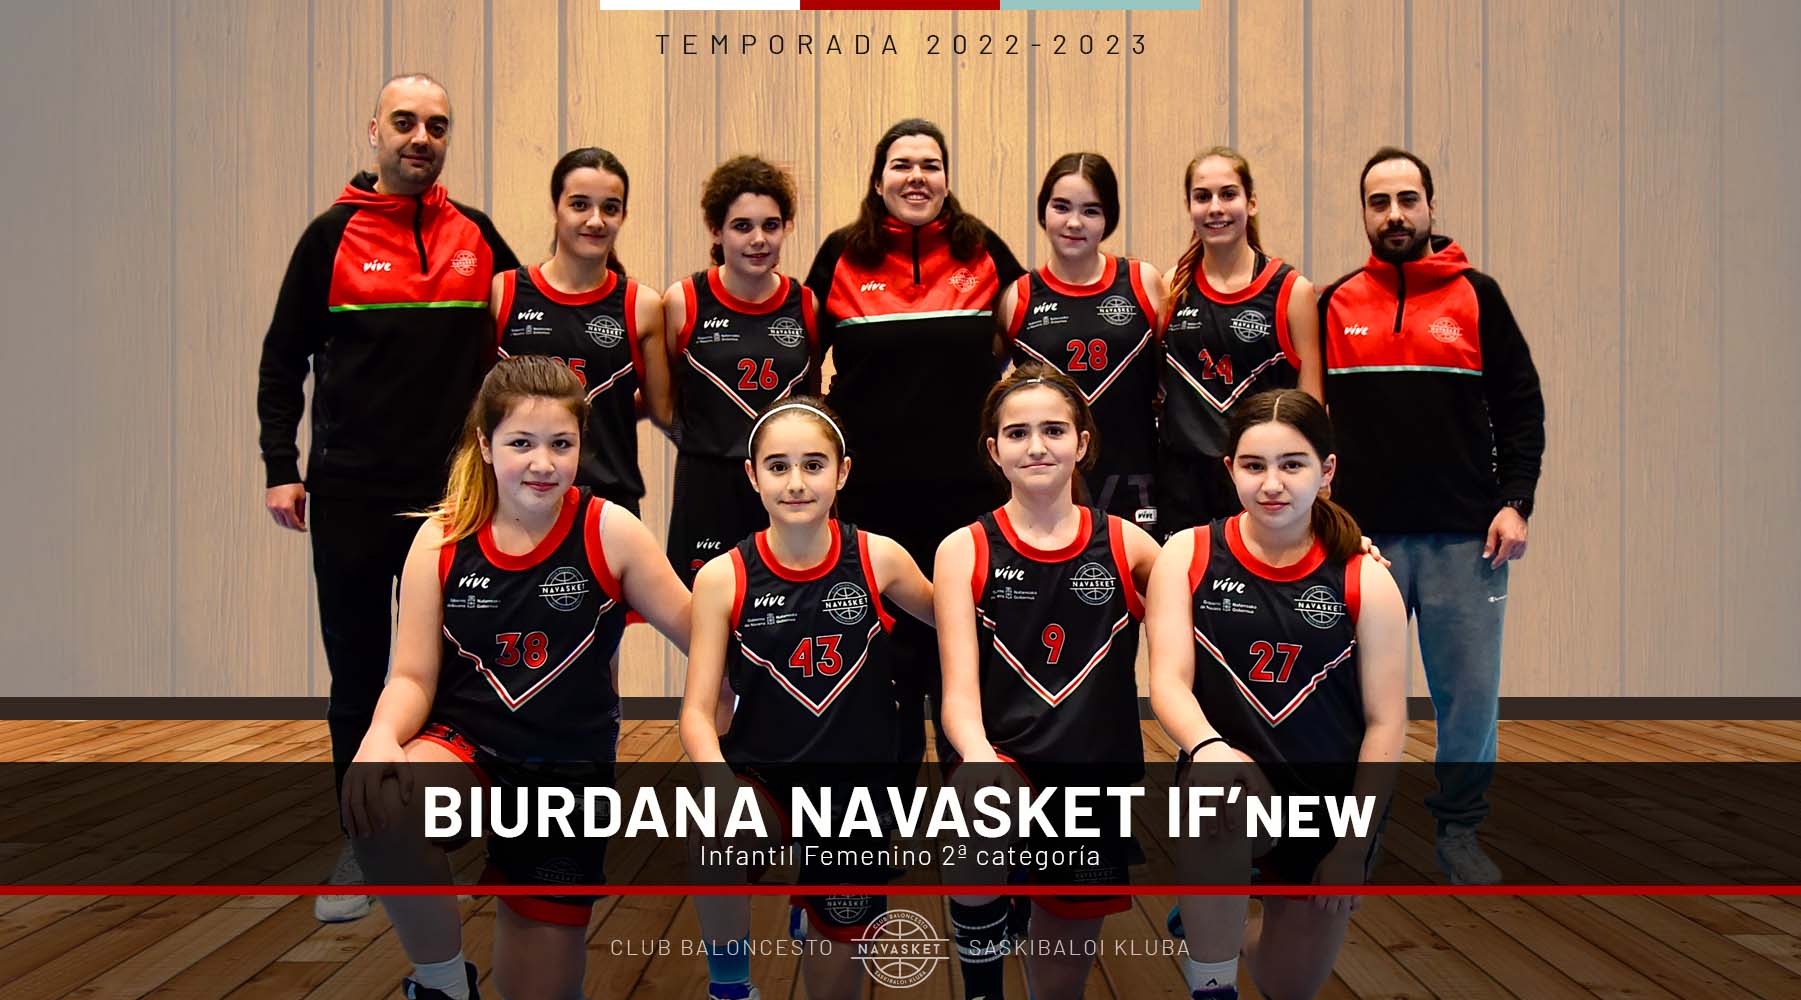 EQUIPOS NVT | Biurdana Navasket IF'new (2022-2023)